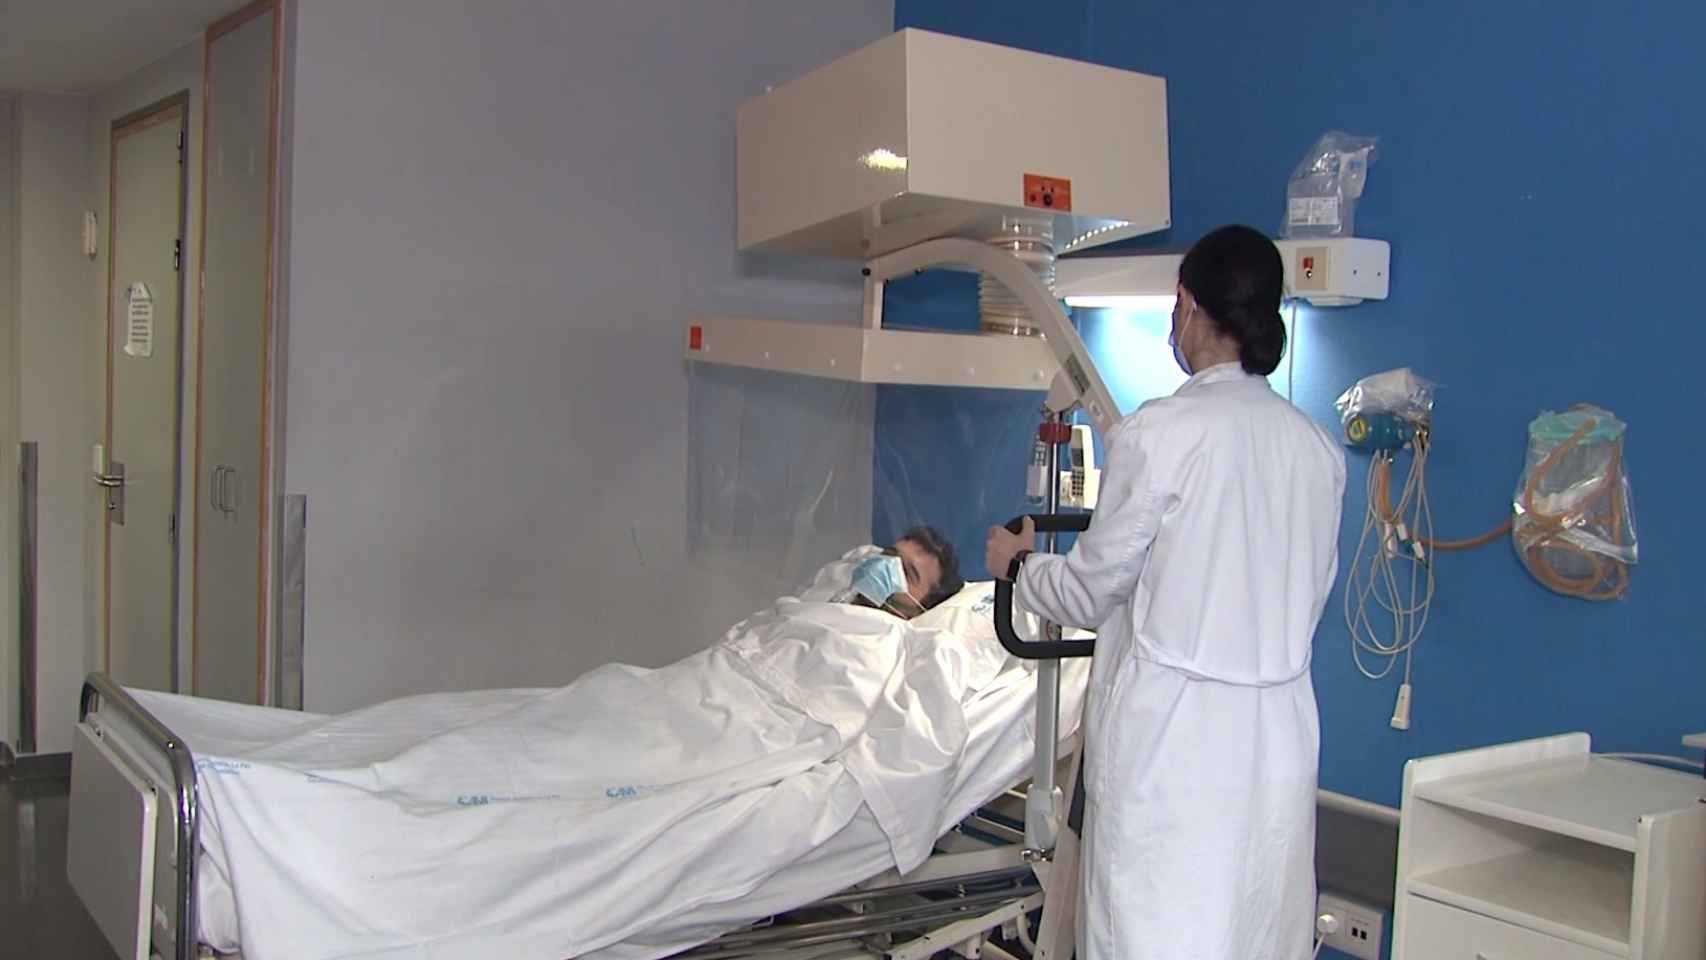 El Aerobox en uso en el Hospital Universitario La Paz de Madrid.